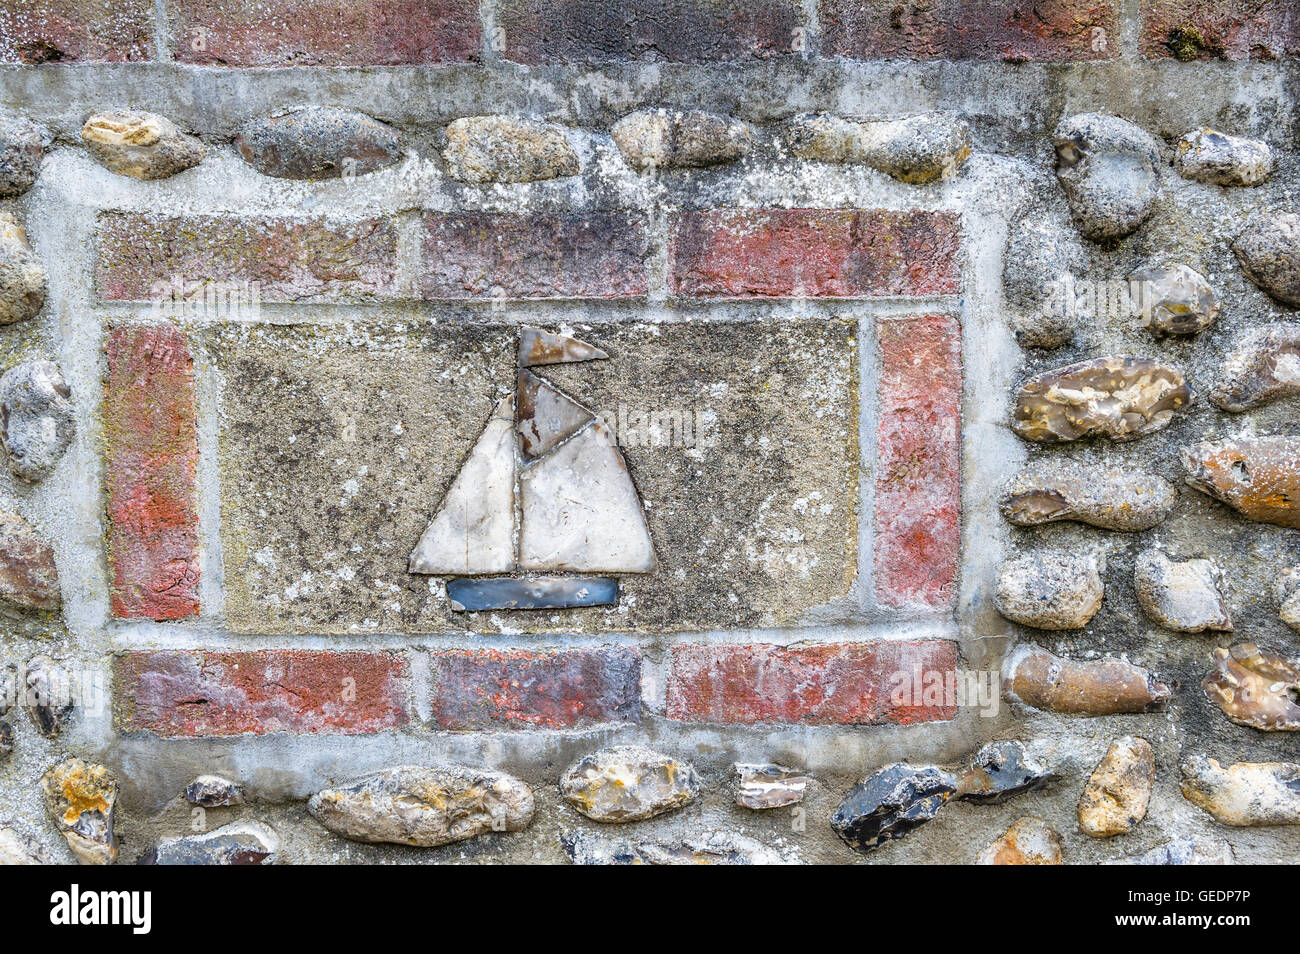 Bateau à voile faite en céramique monté dans un mur de briques et silex à Norfolk, en Angleterre. Banque D'Images